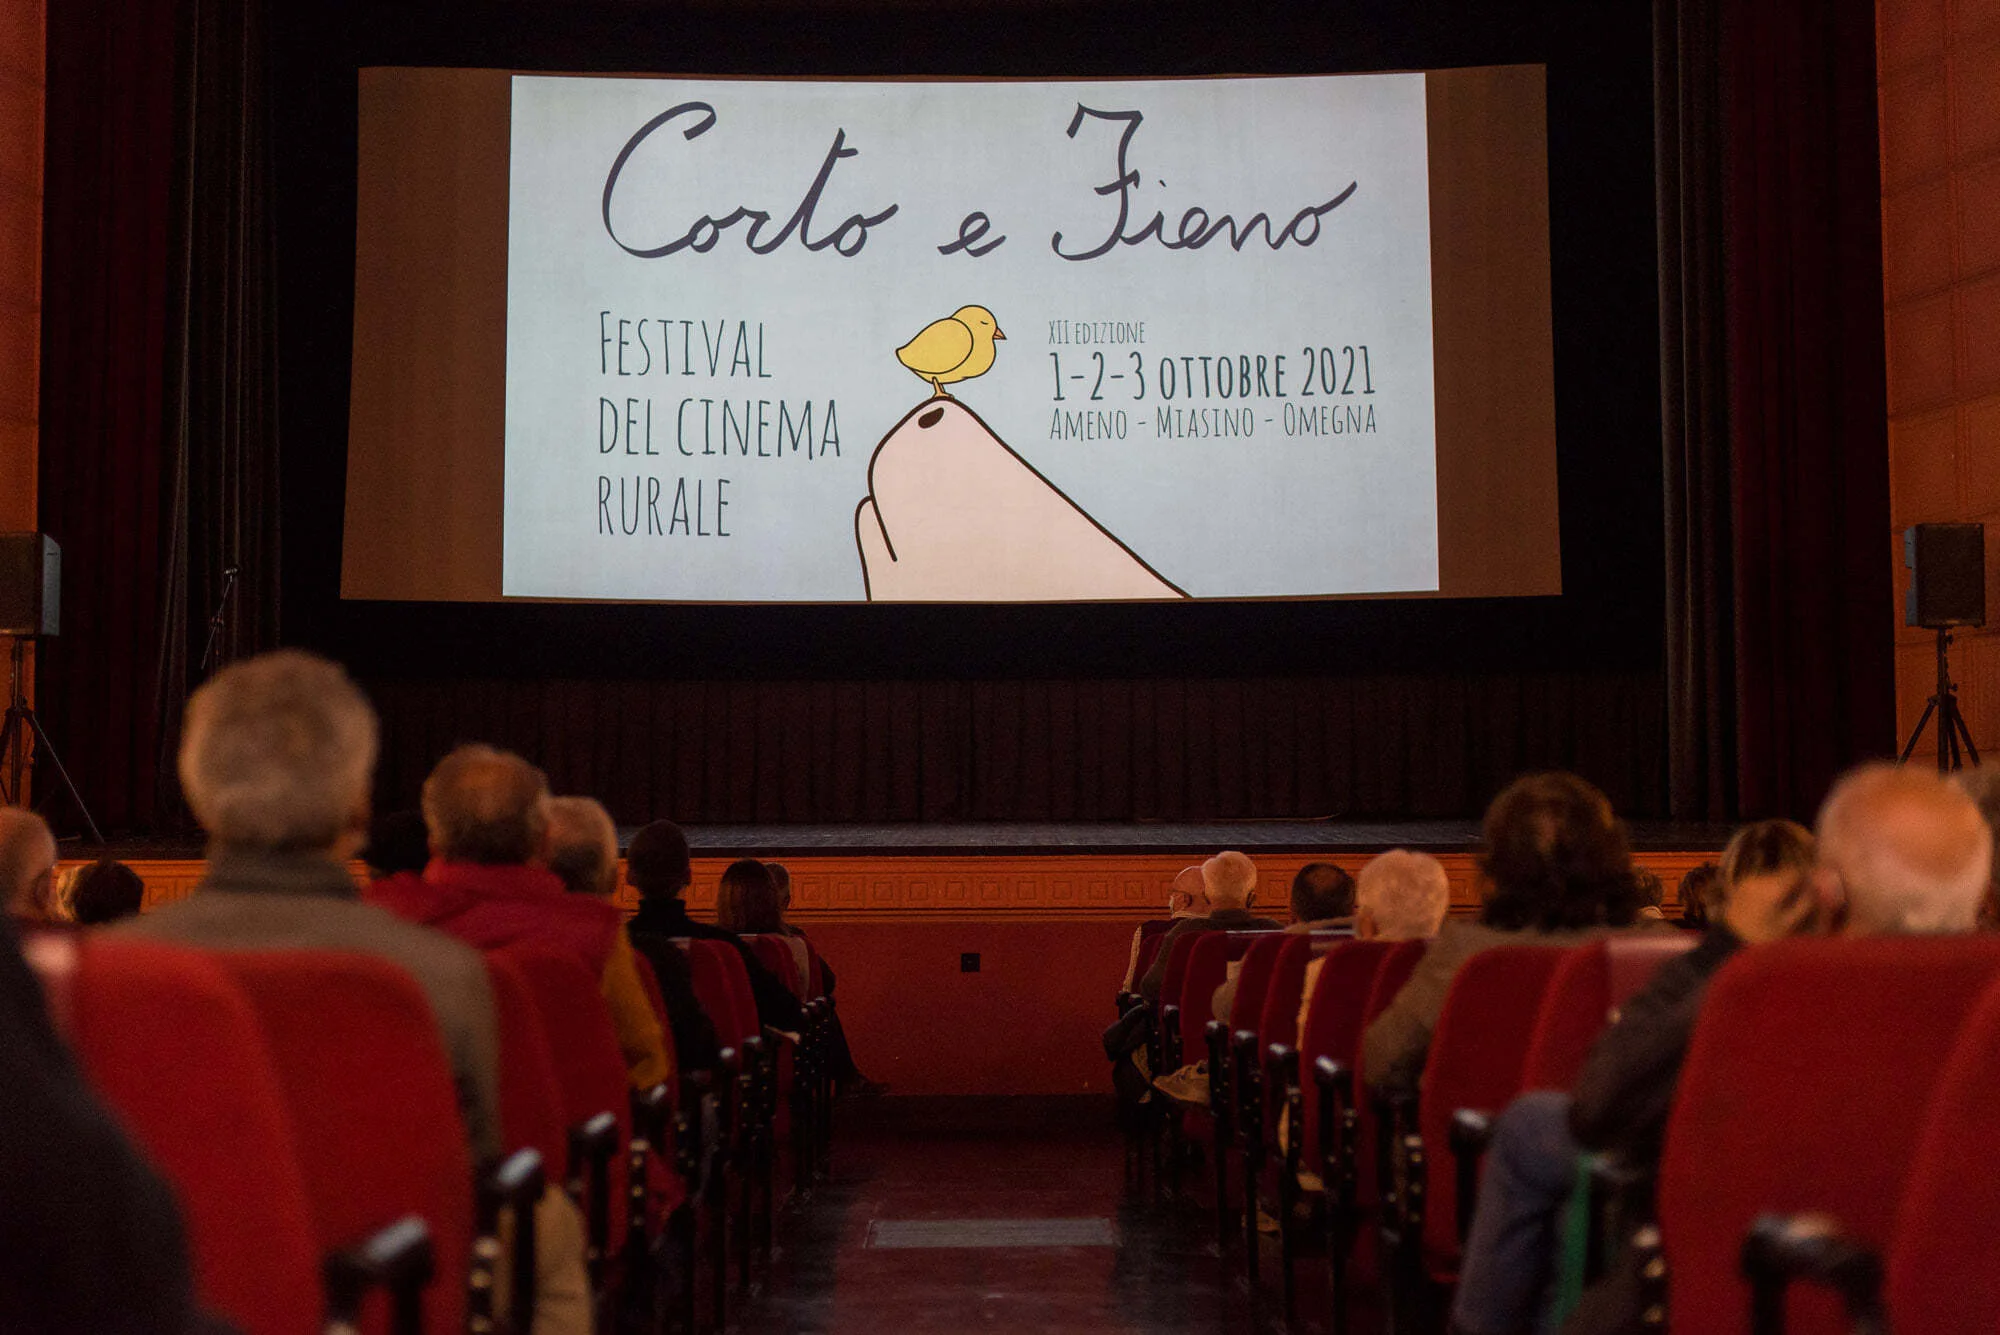 Corto e Fieno - Rural Film Festival | Farming meets art at the cinema